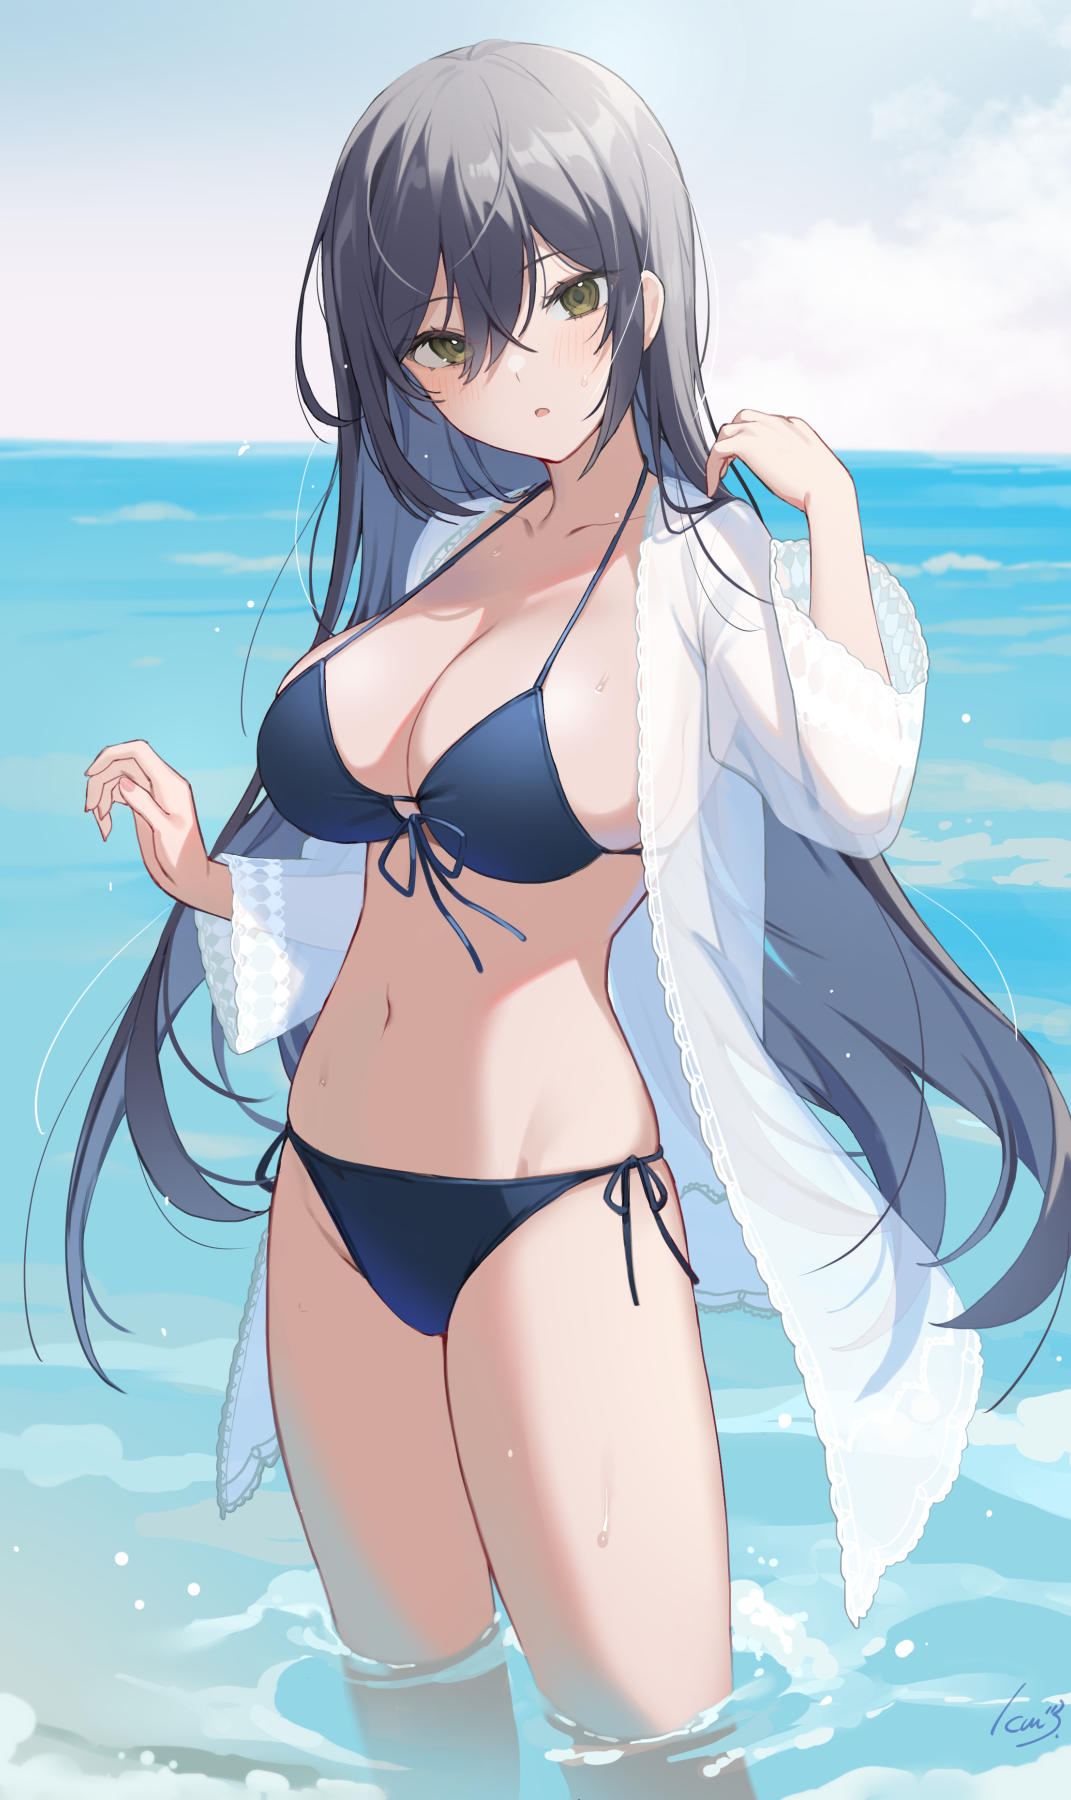 Anime 1071x1800 anime anime girls bikini water big boobs cleavage blue bikini long hair artwork Icomochi